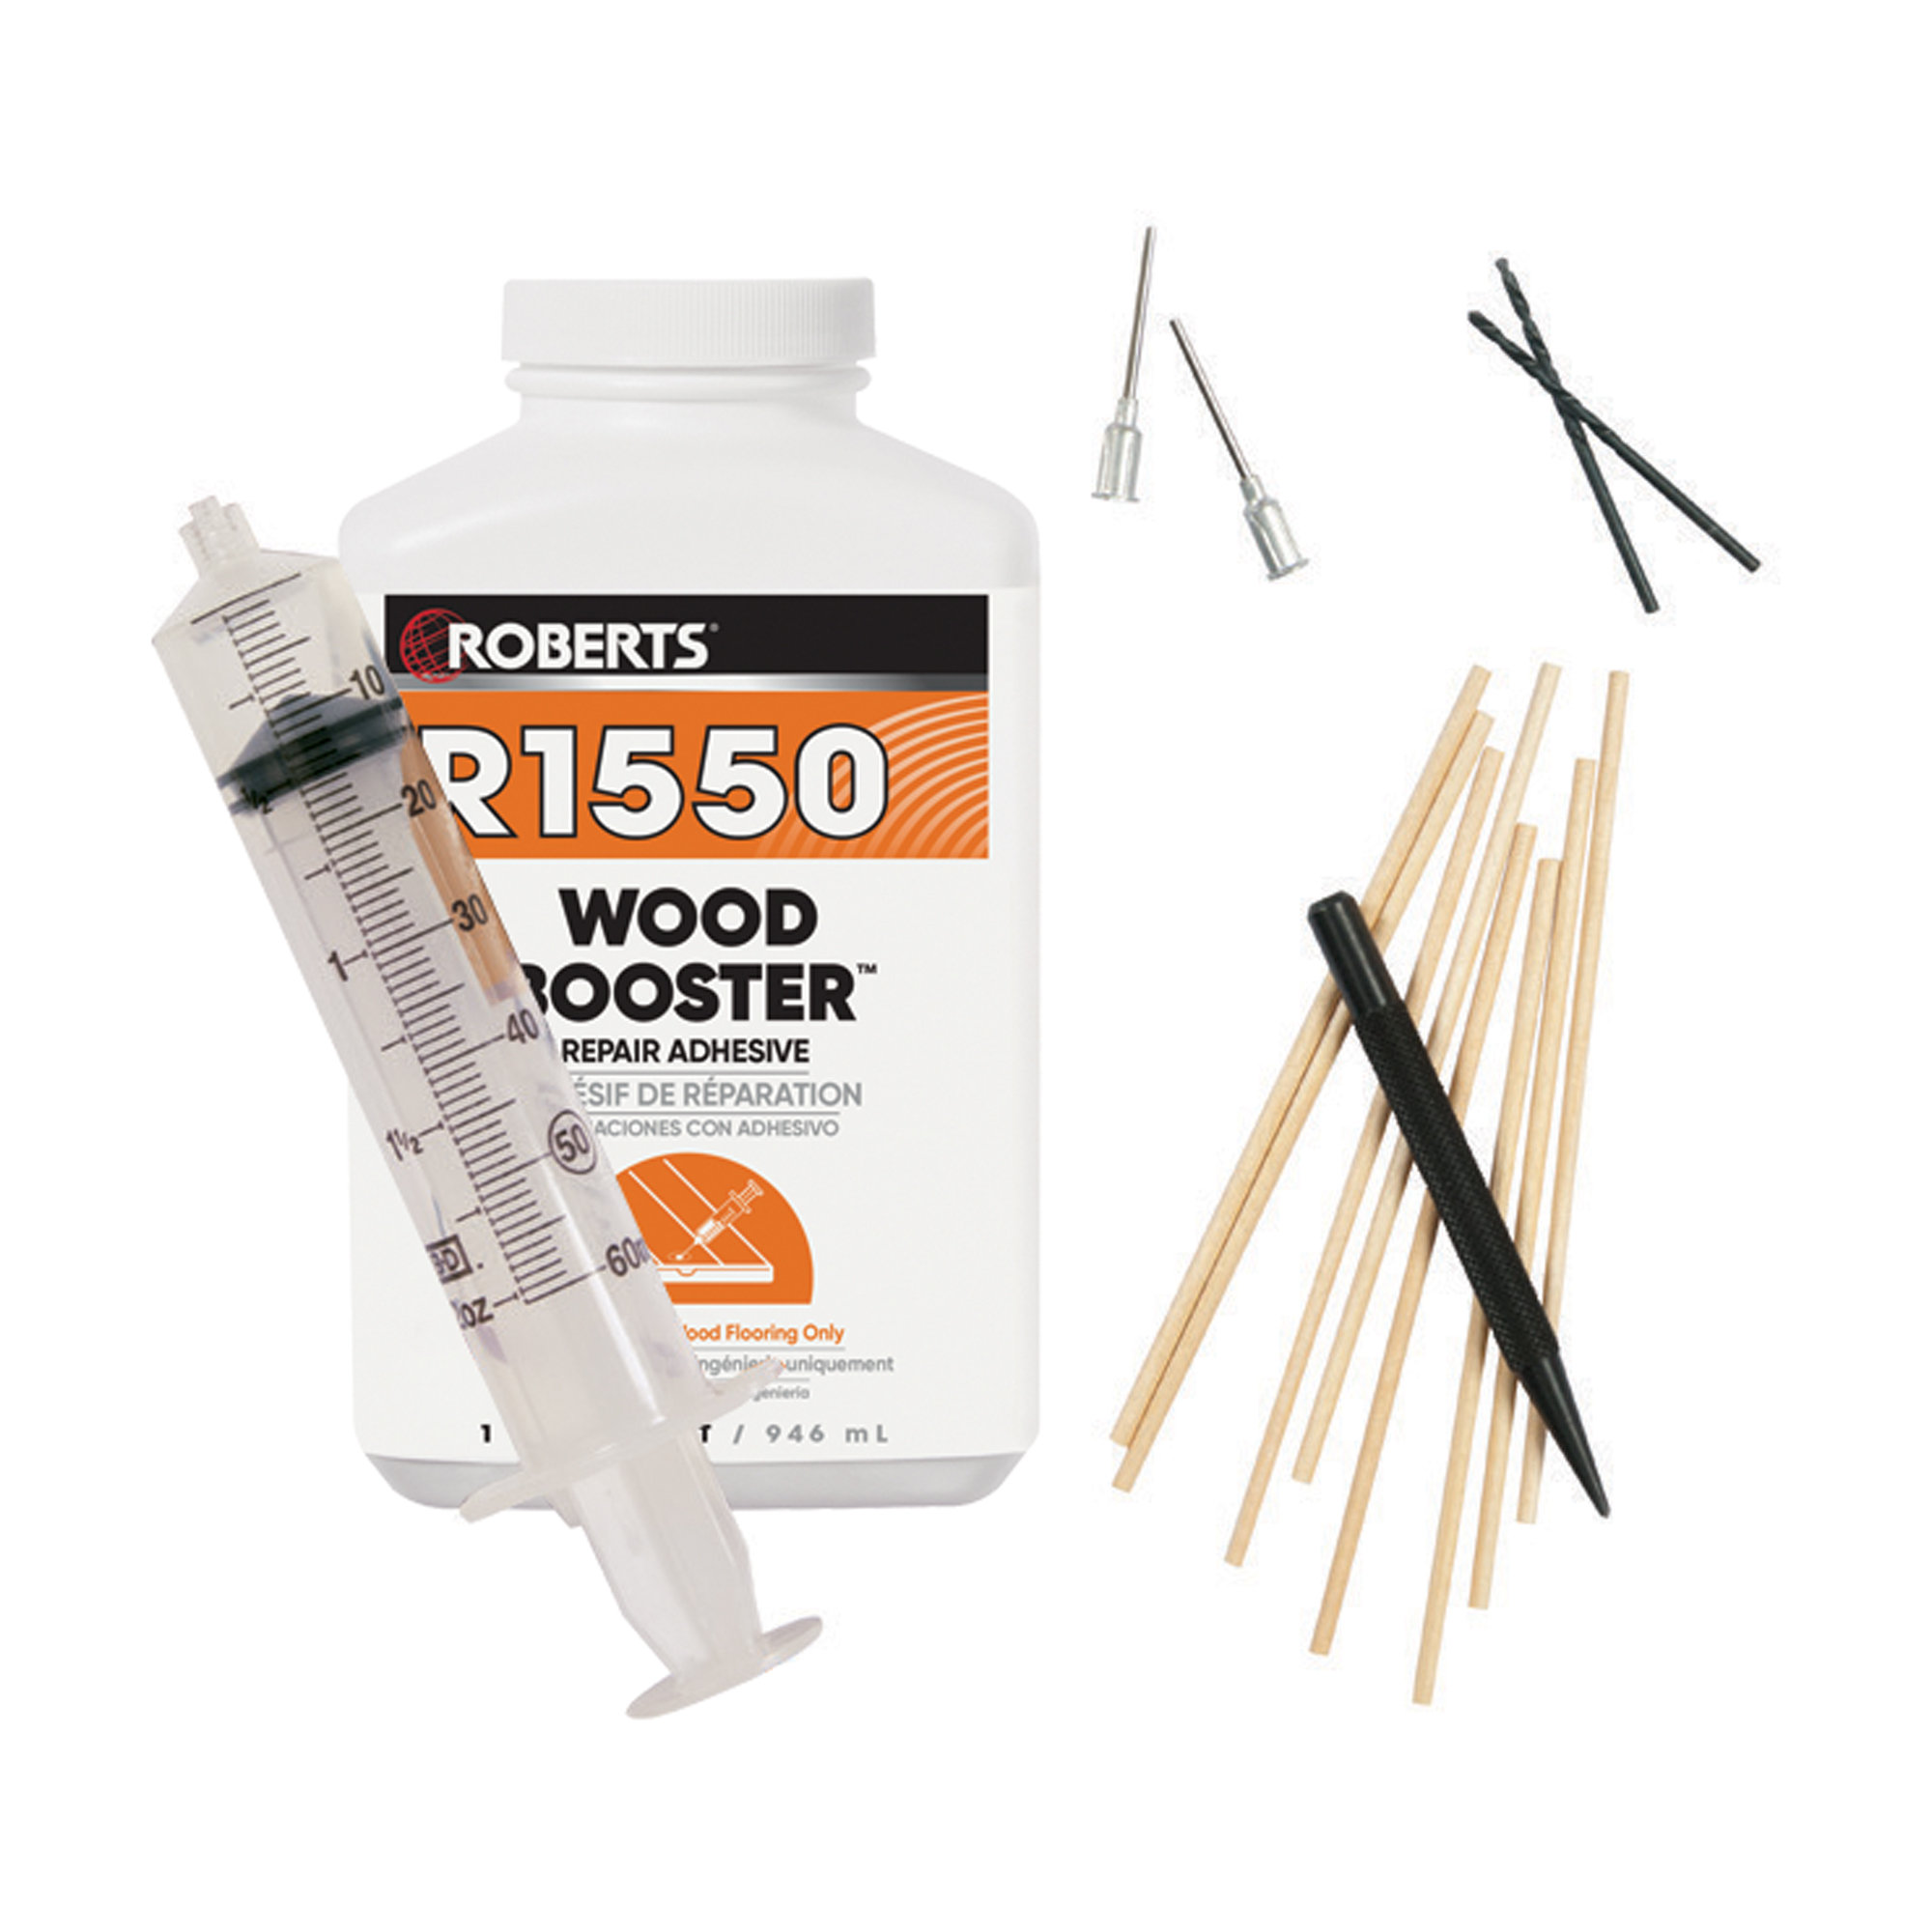  Wood Glue Injector